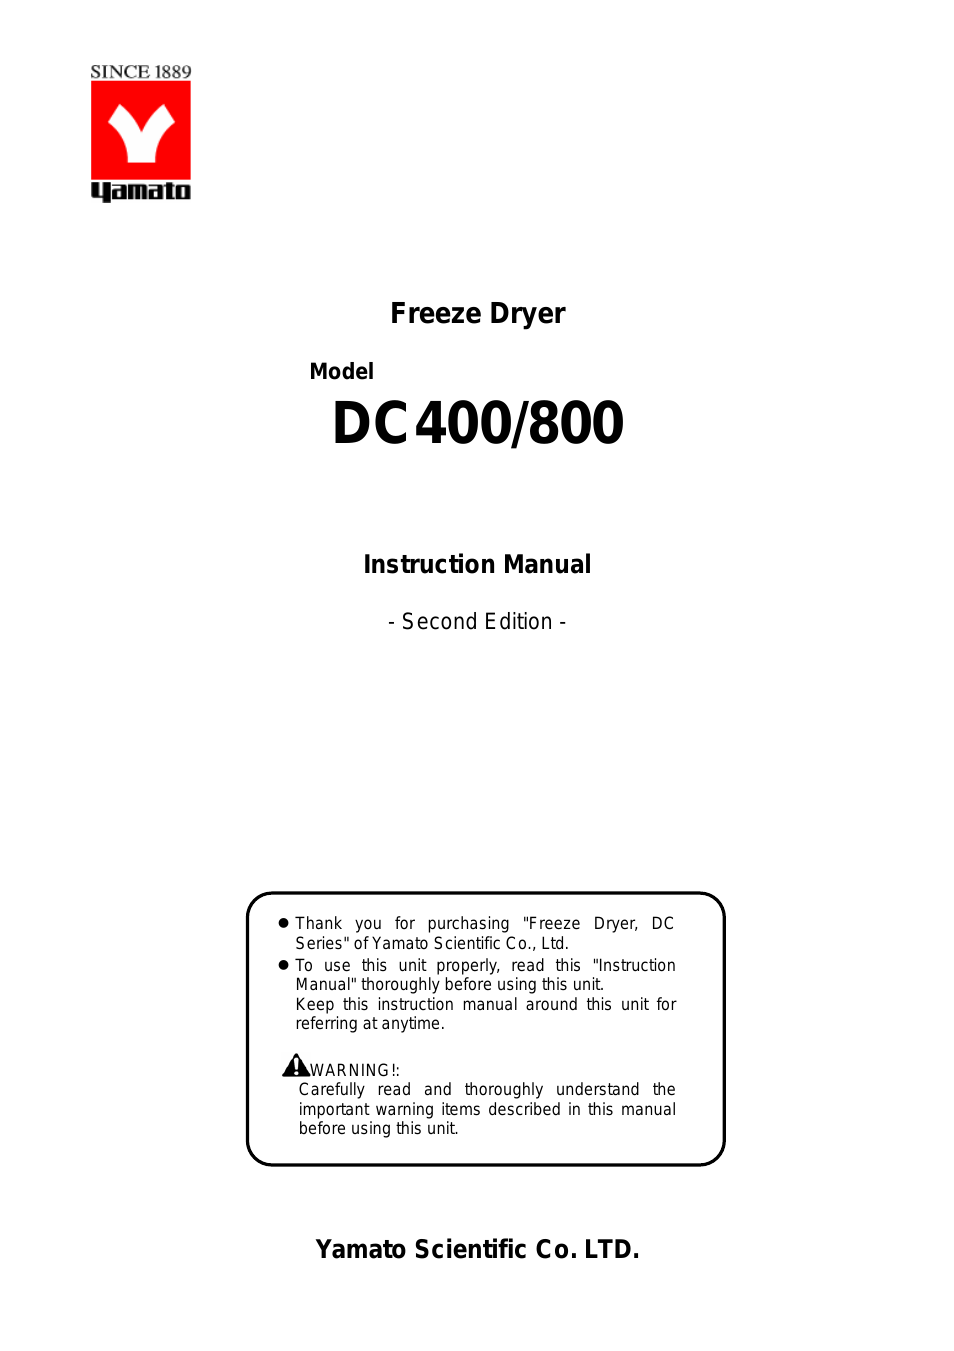 DC400 Freeze Dryers